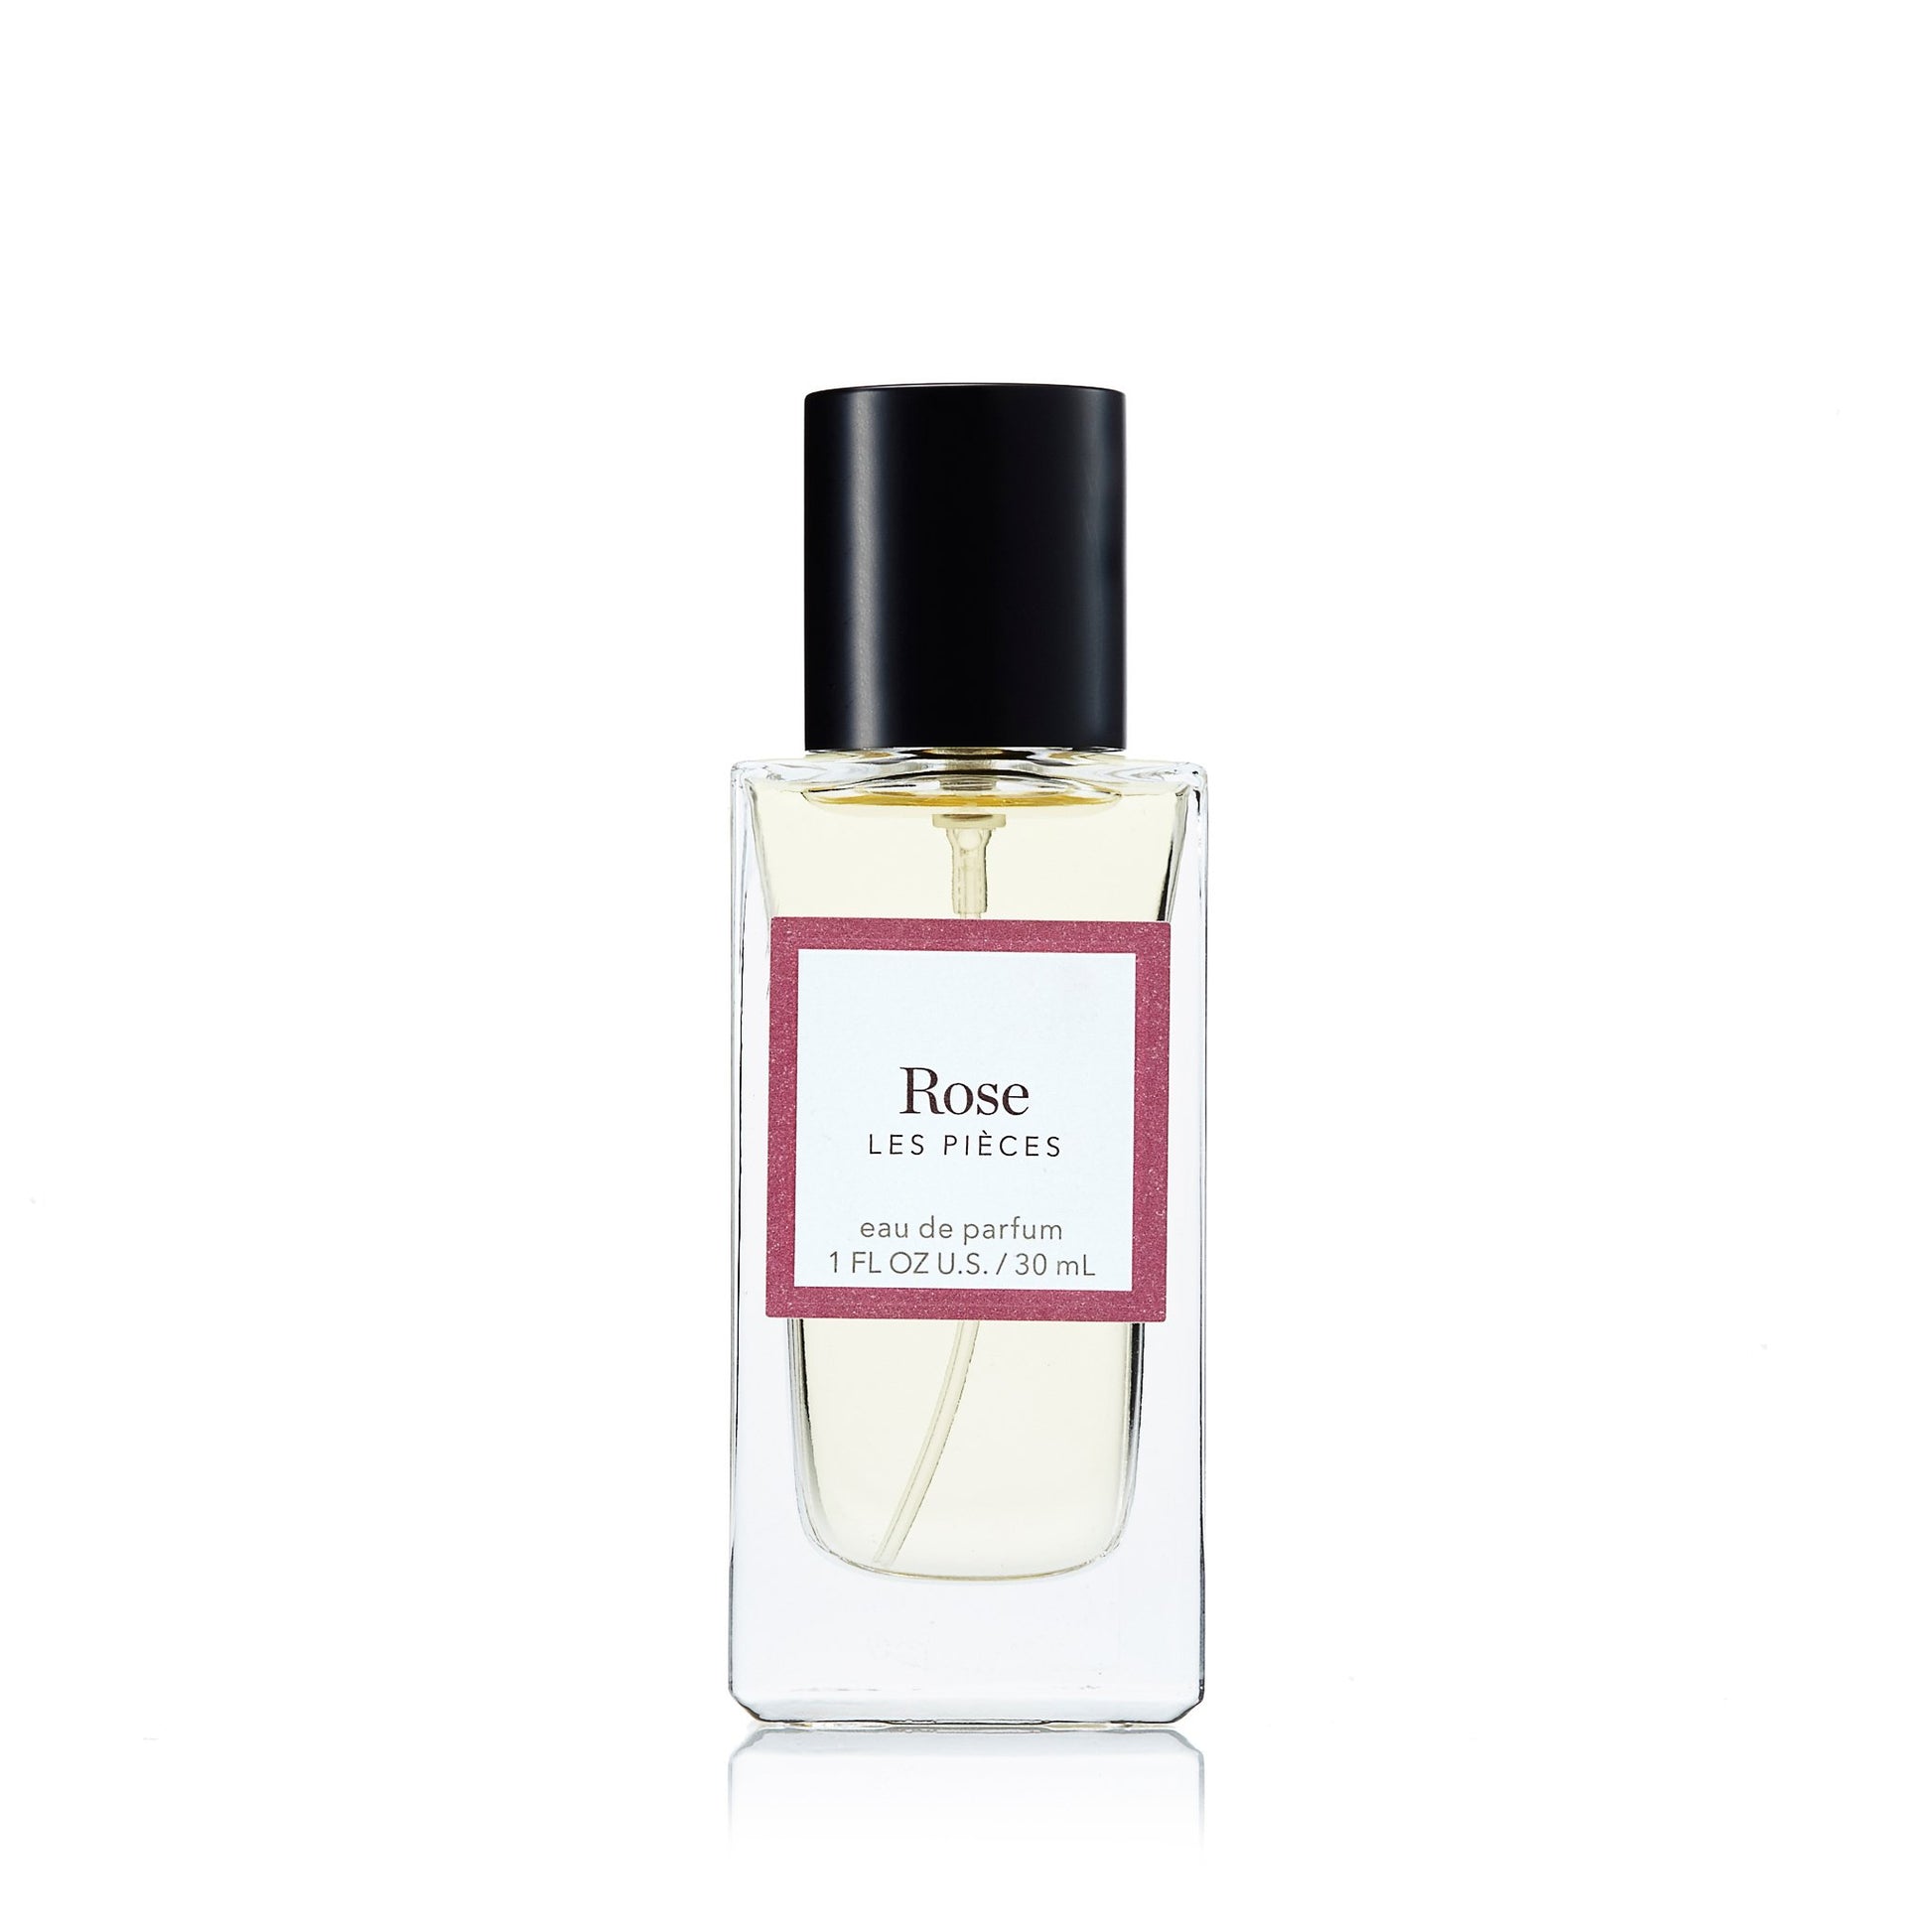 Rose Eau de Parfum Spray for Women by Les Pieces, Product image 1